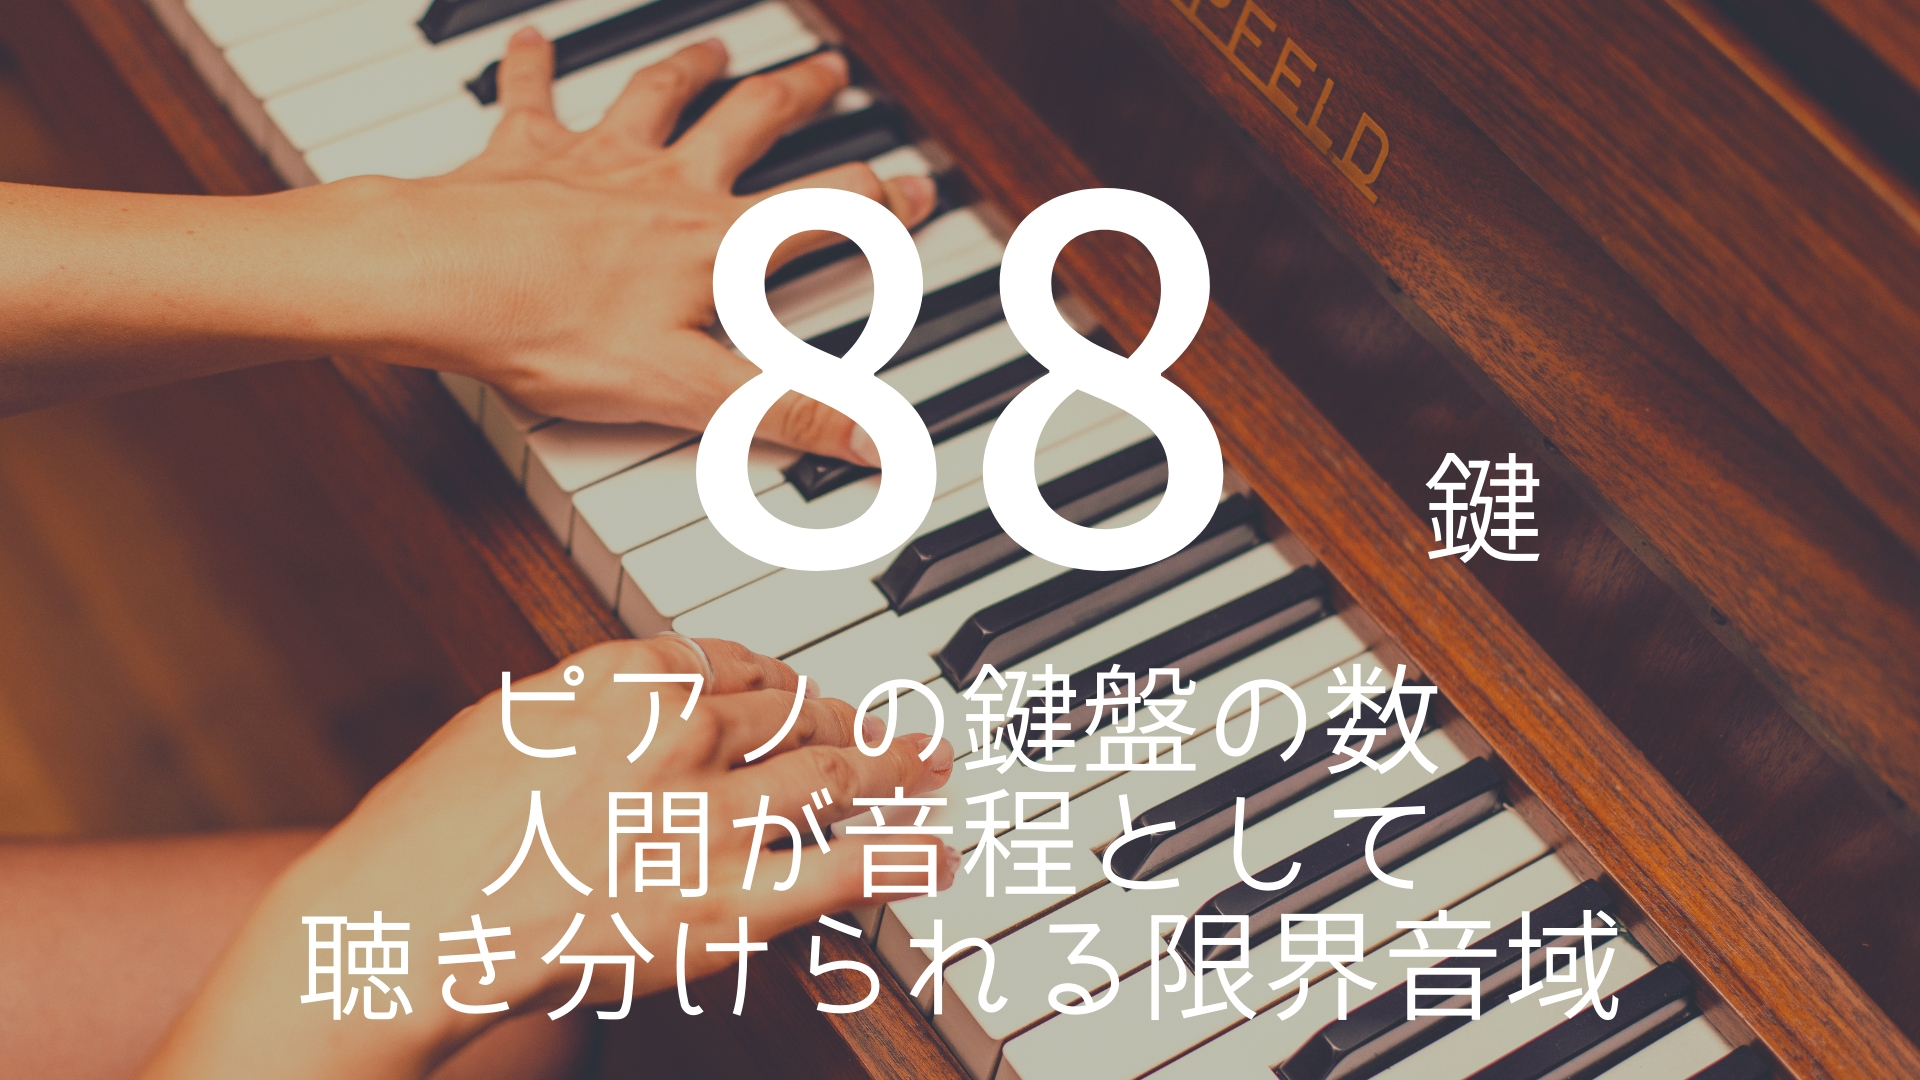 「88鍵」 >>> ピアノの鍵盤の数。人間が音程として聴き分けられる限界音域。